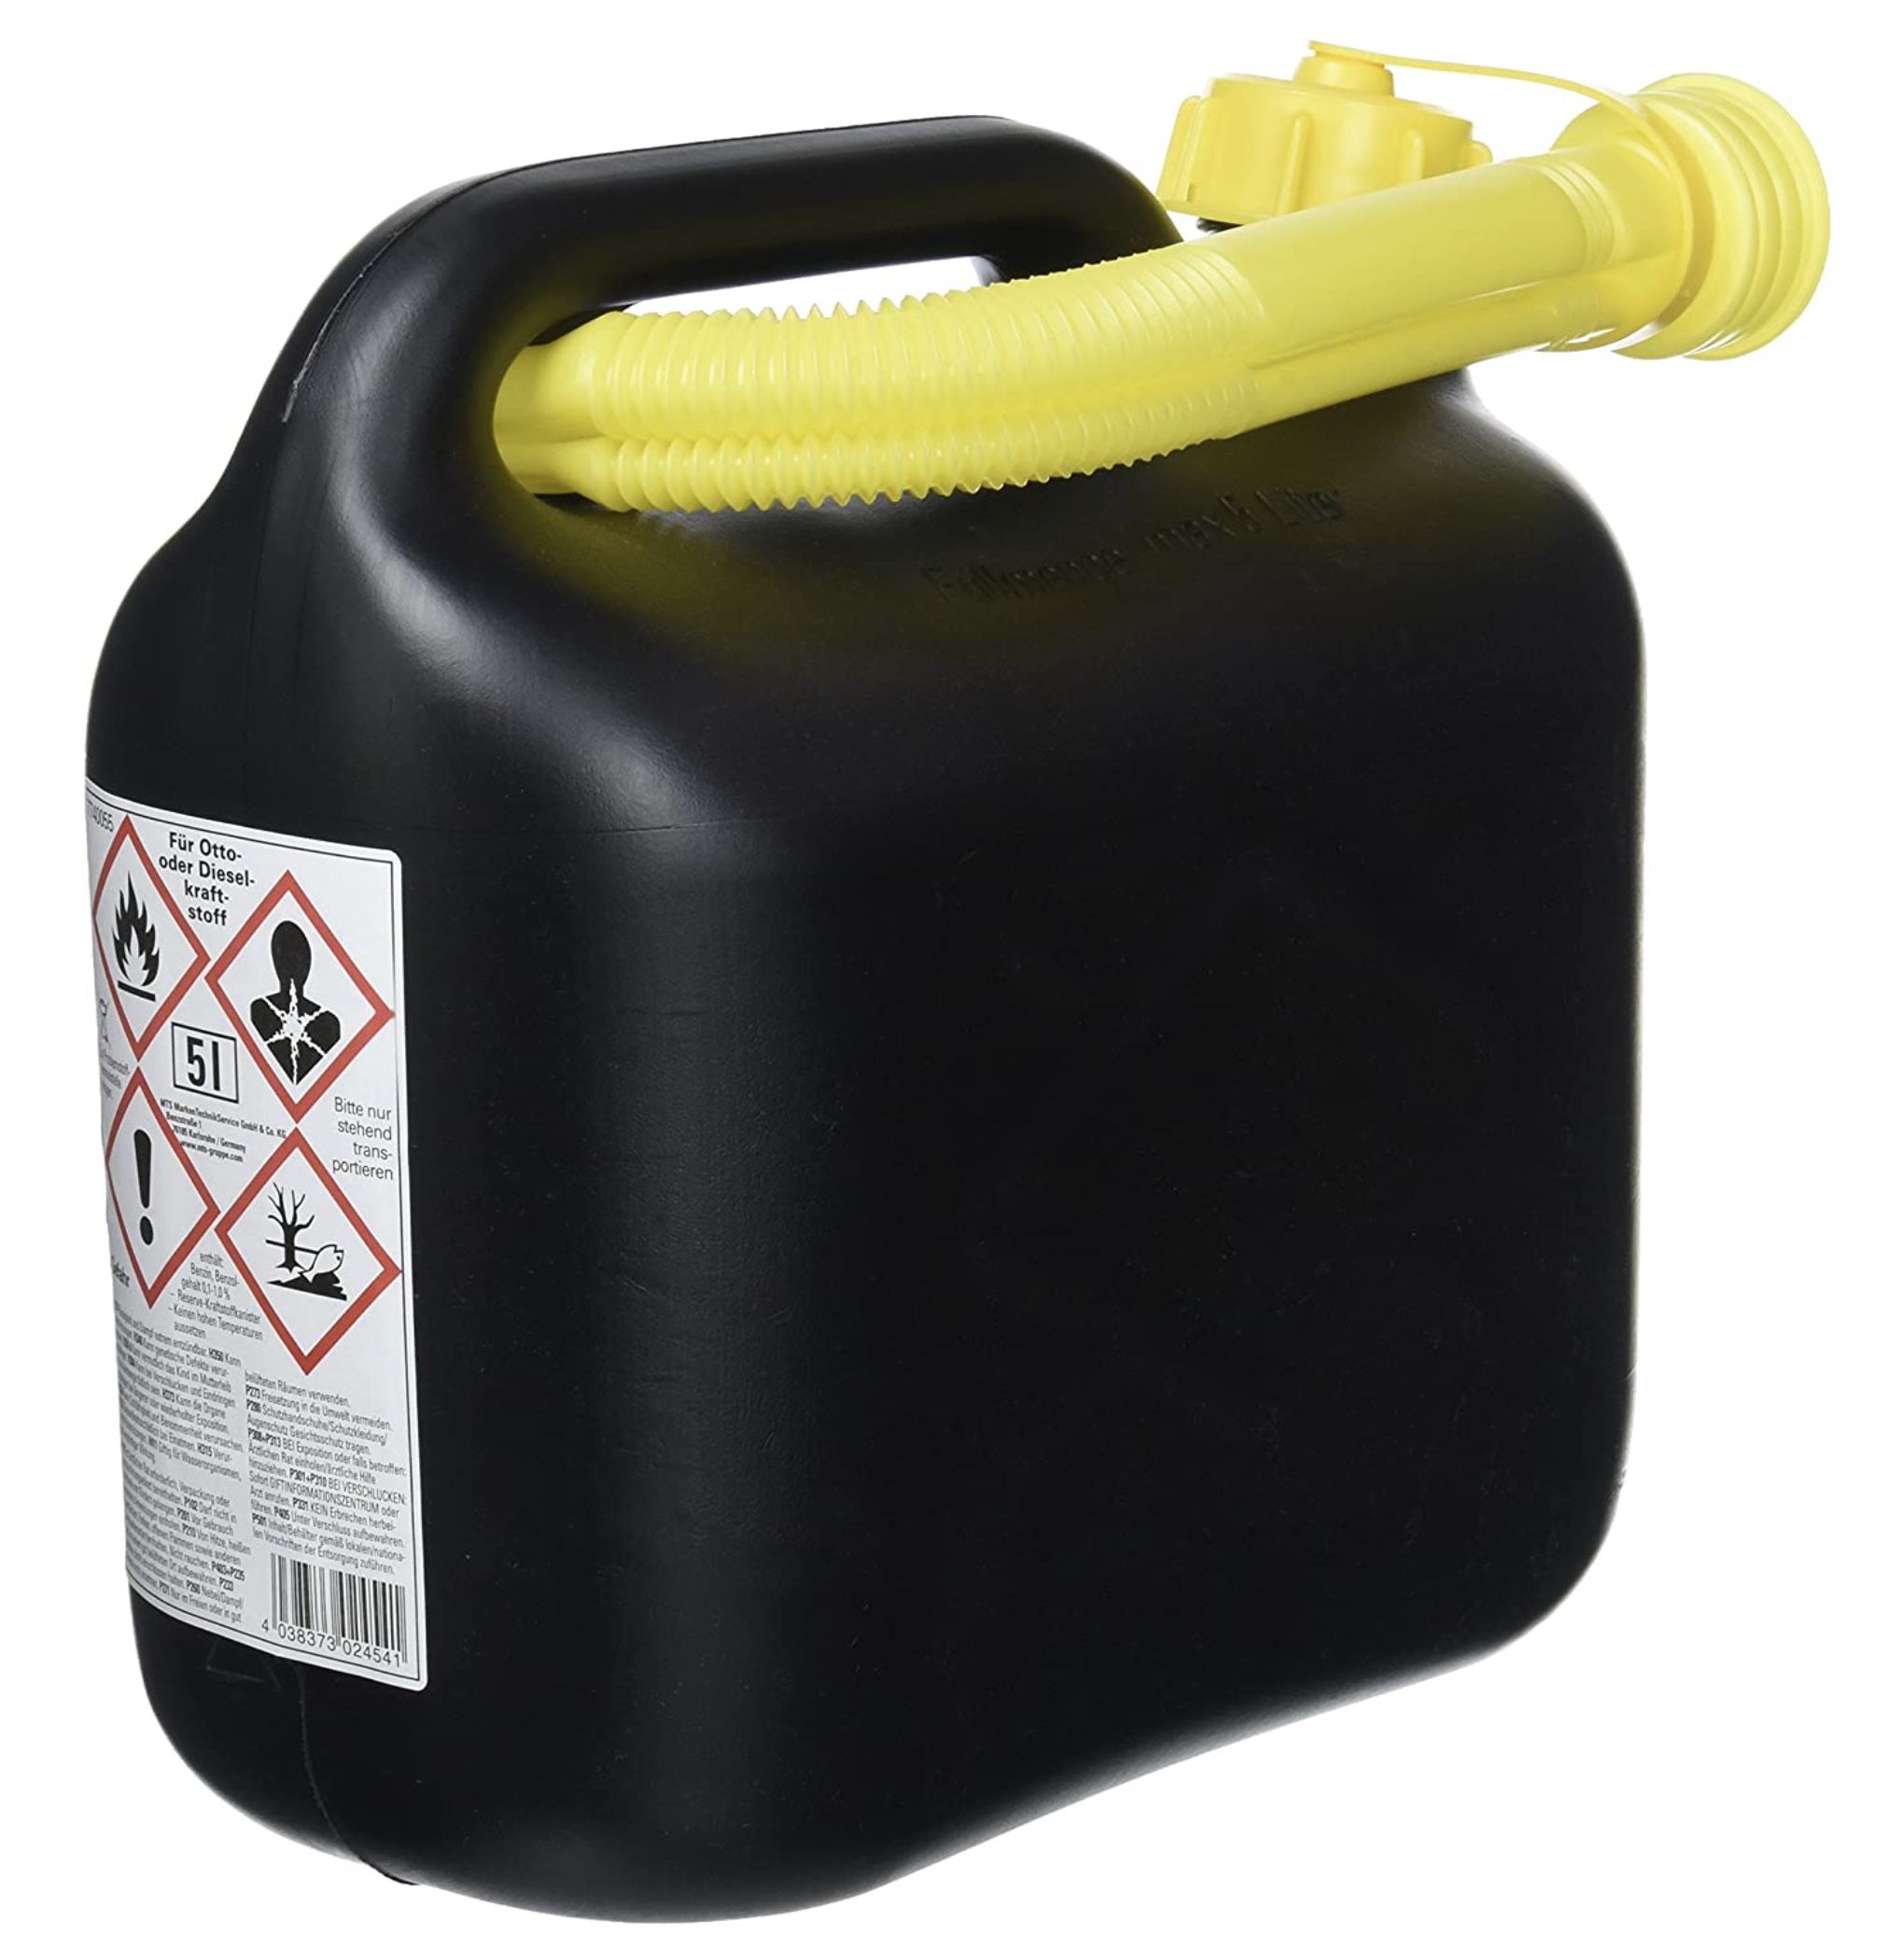 5 Liter Cartrend Reserve Kraftstoff Kanister aus PVC für 6,99€ (statt 10€)